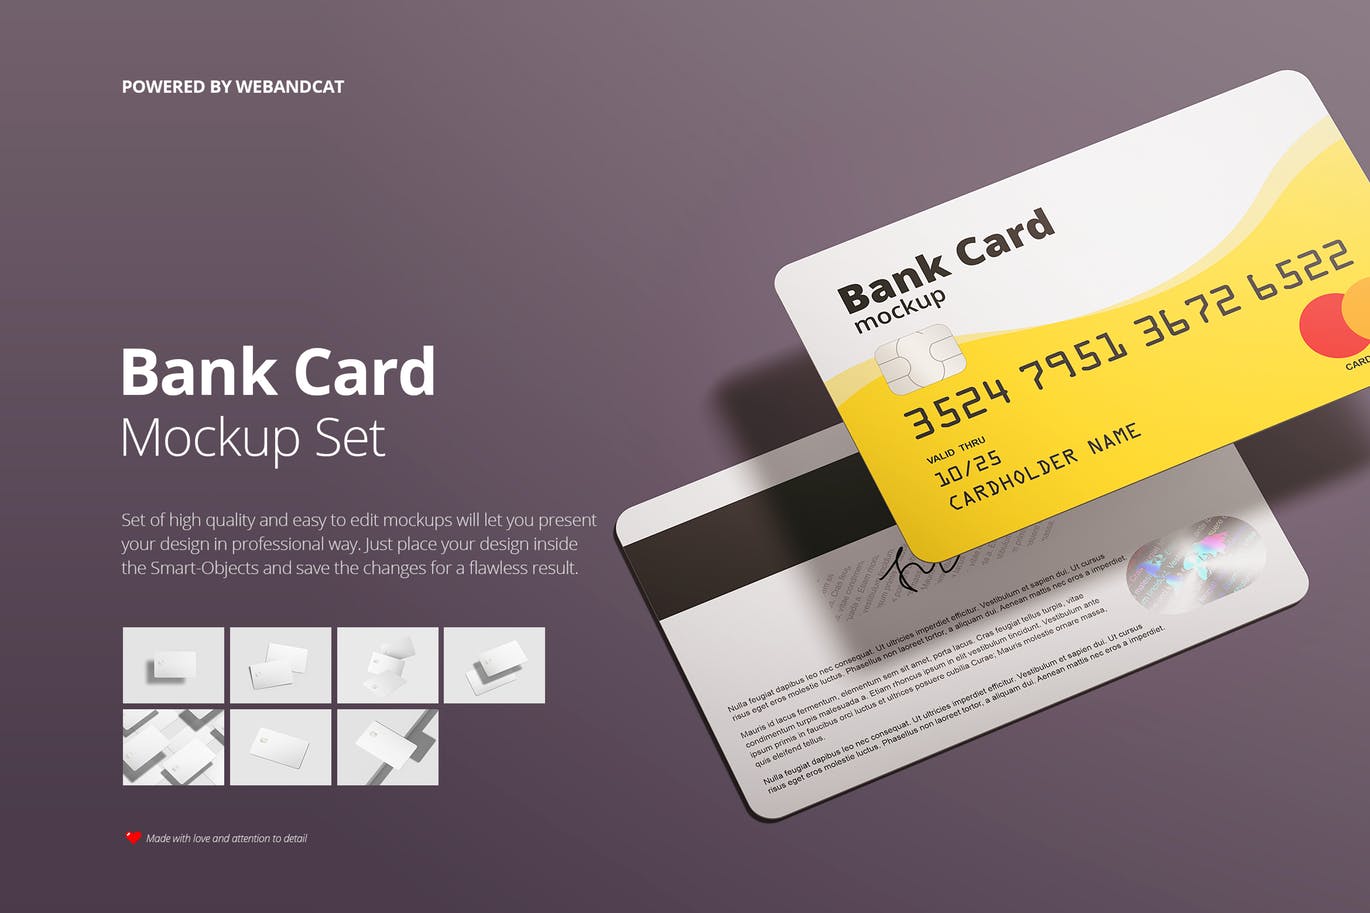 银行卡/会员卡版面设计效果图蚂蚁素材精选模板 Bank / Membership Card Mockup插图